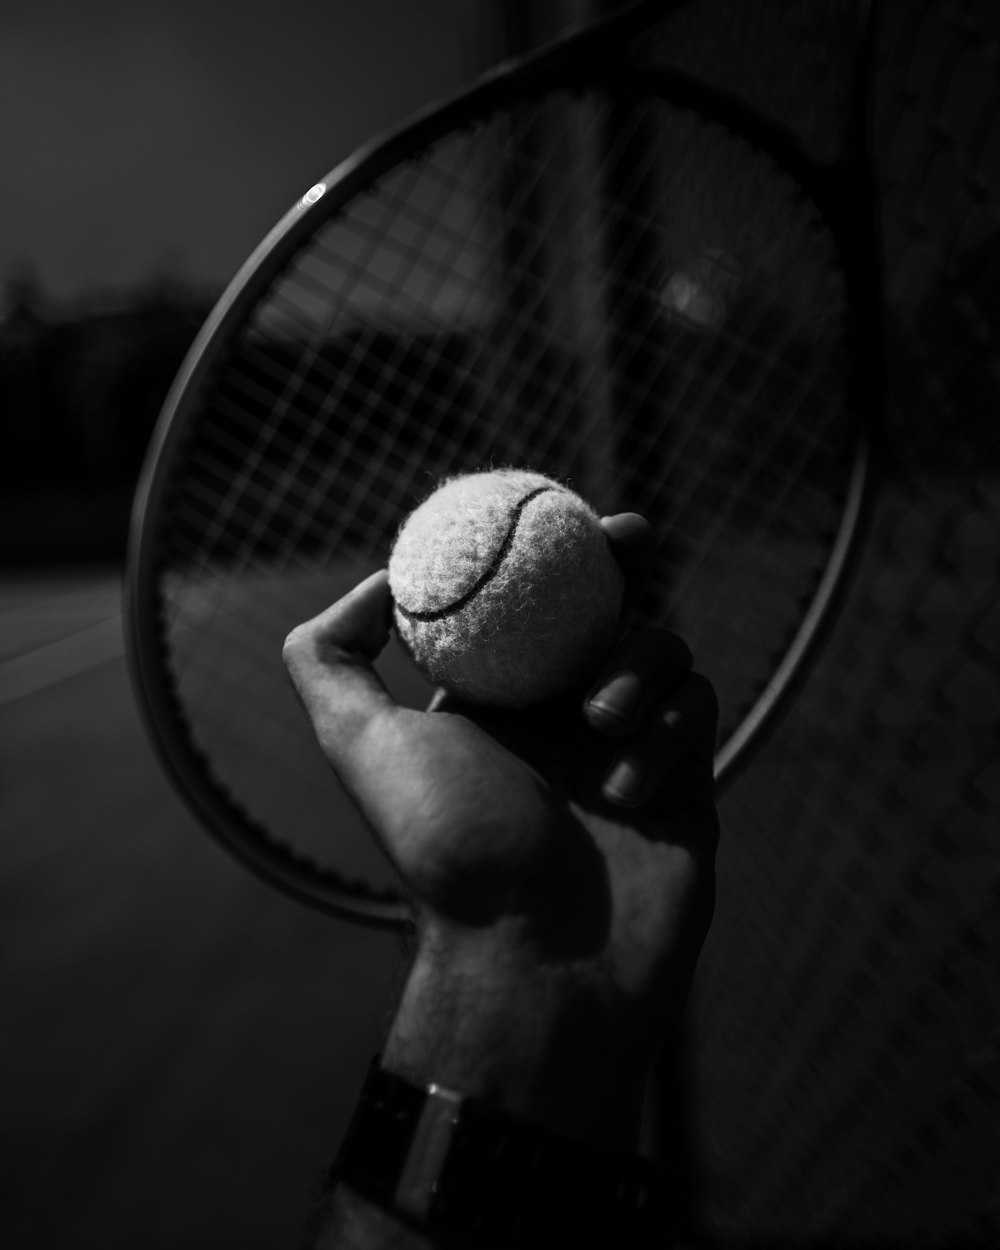 a hand holding a tennis racket